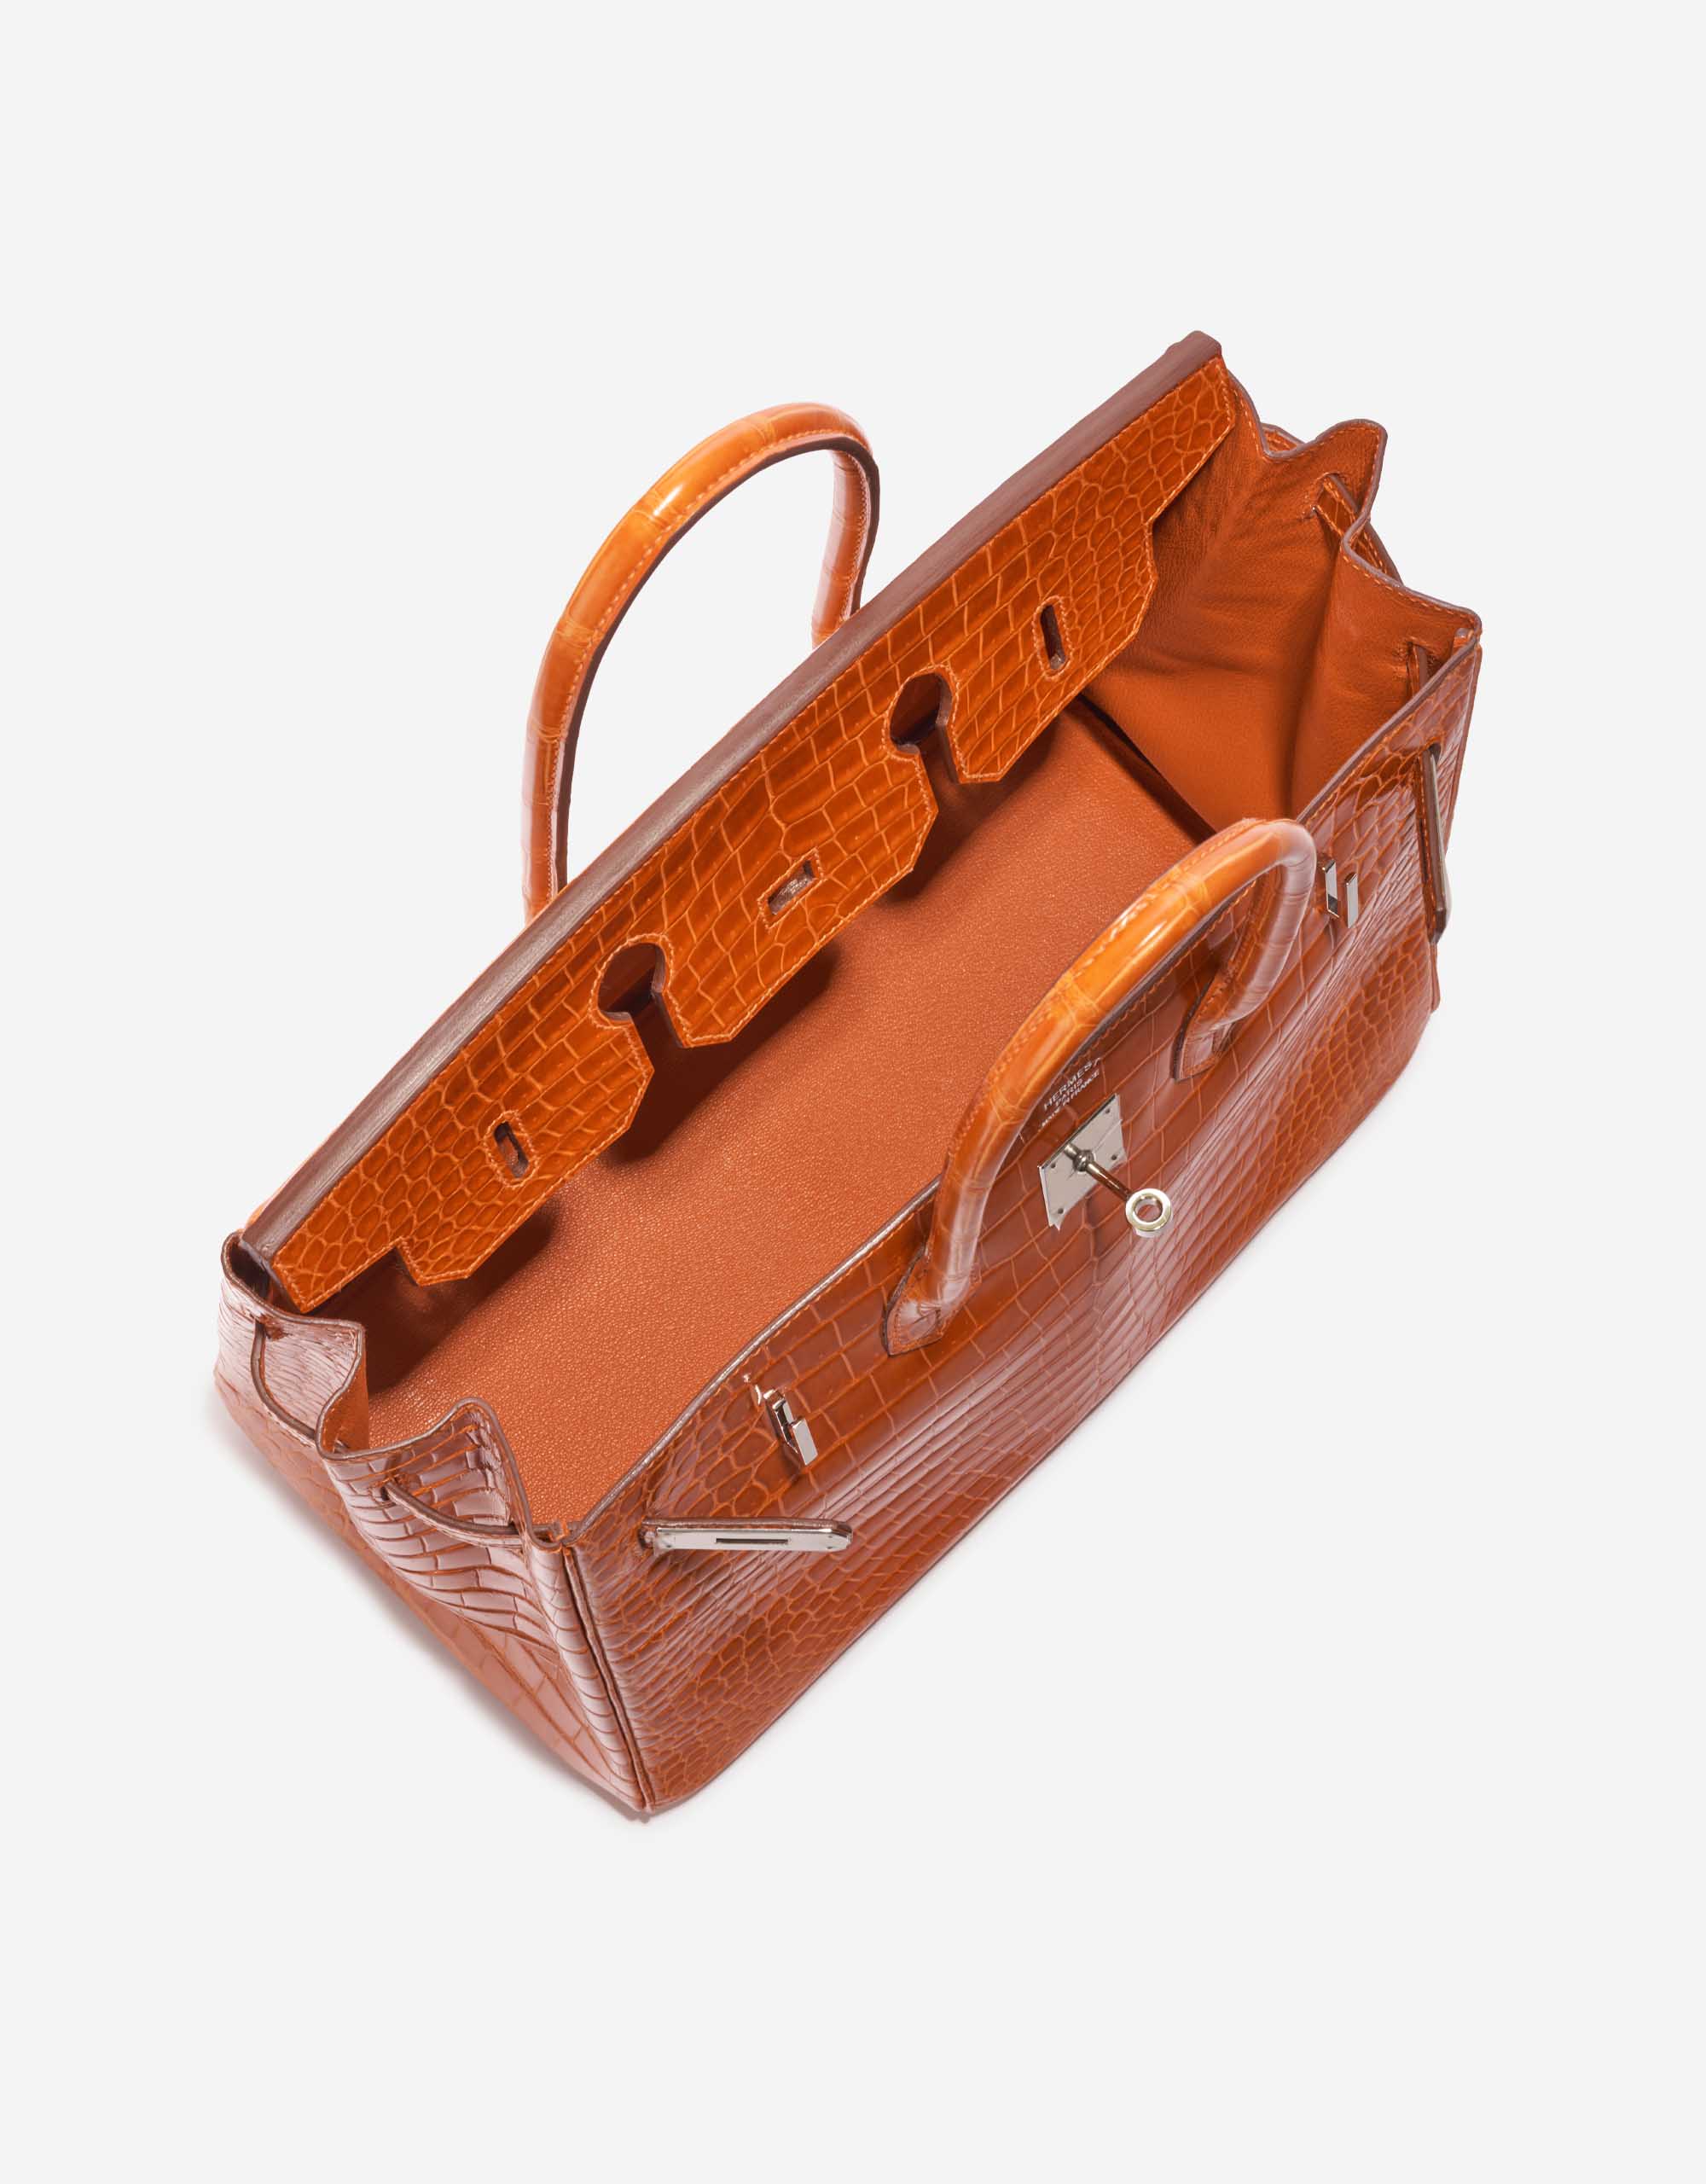 Gebrauchte Hermès Tasche Birkin 35 Porosus Crocodile Pain d'épice Orange Inside | Verkaufen Sie Ihre Designer-Tasche auf Saclab.com